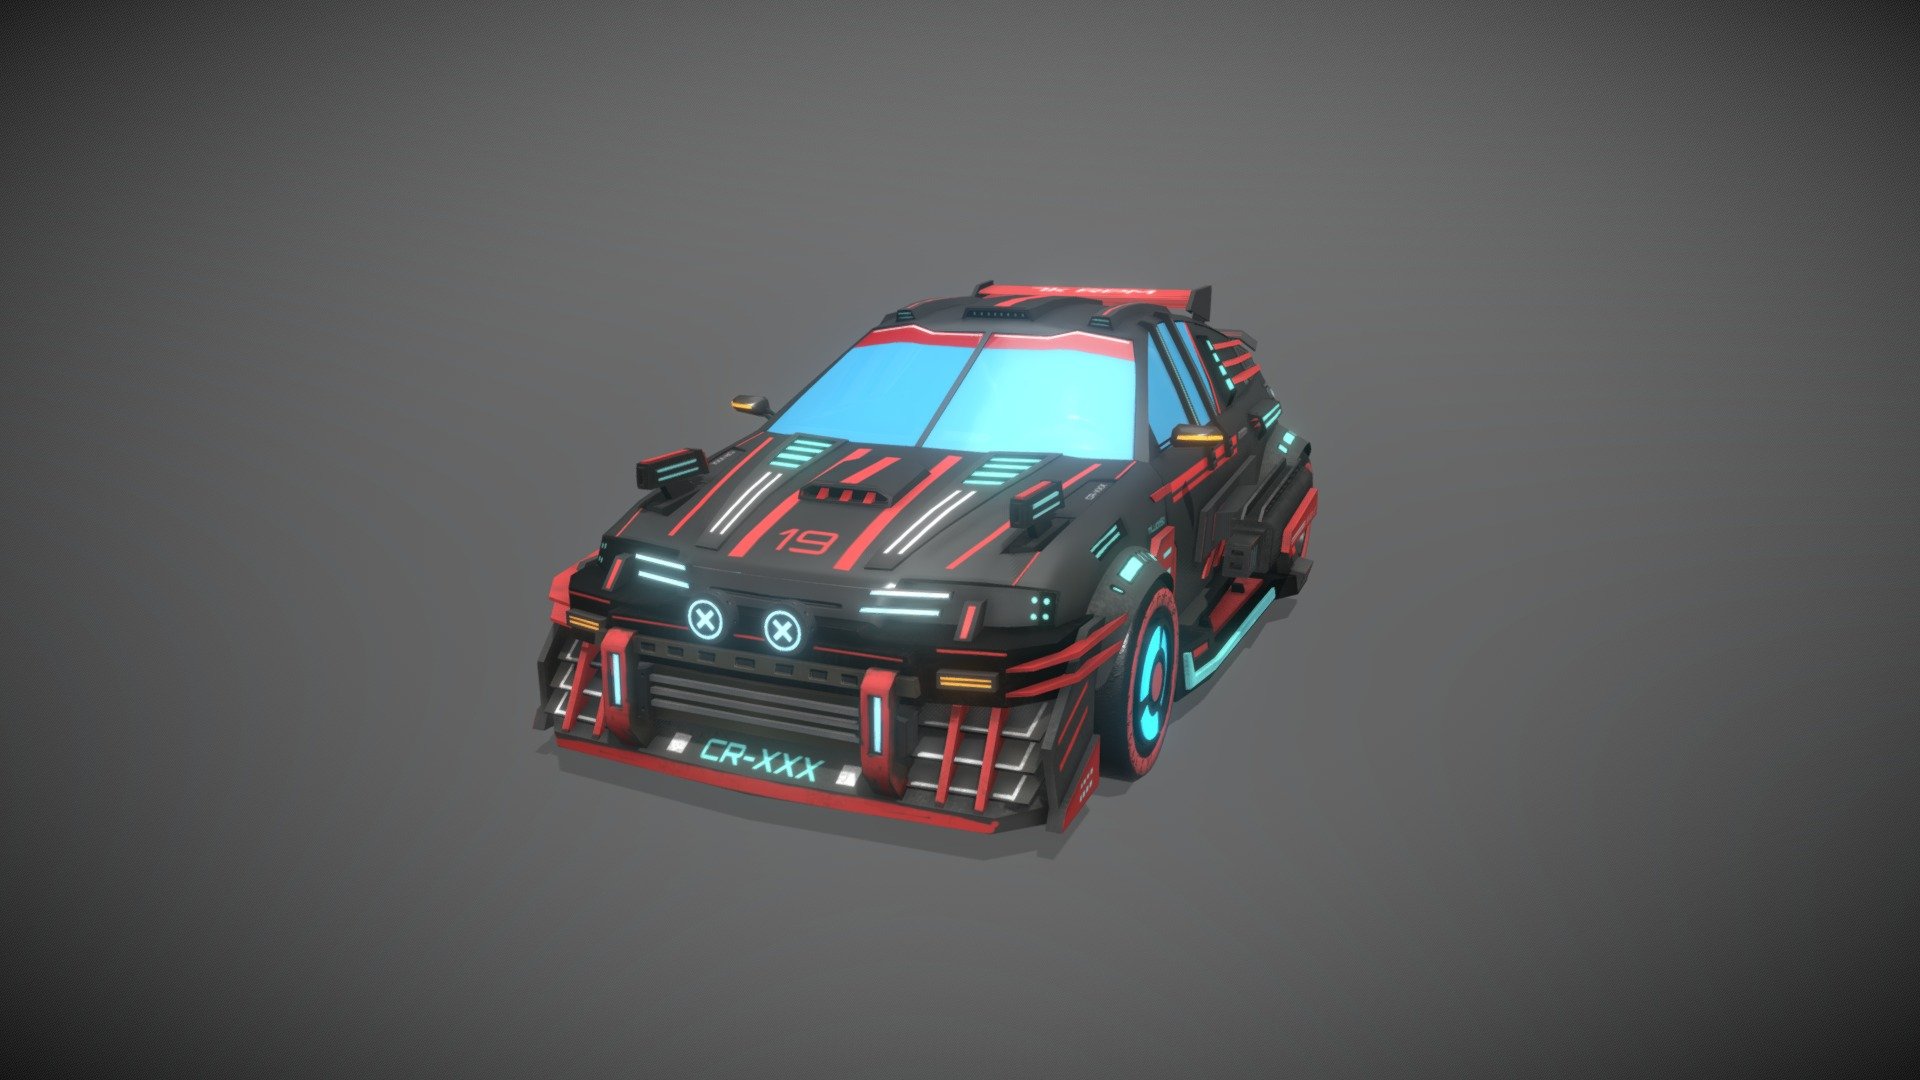 cyberpunk honda cr-x battle car - 3D model by mlucio5d 3d model